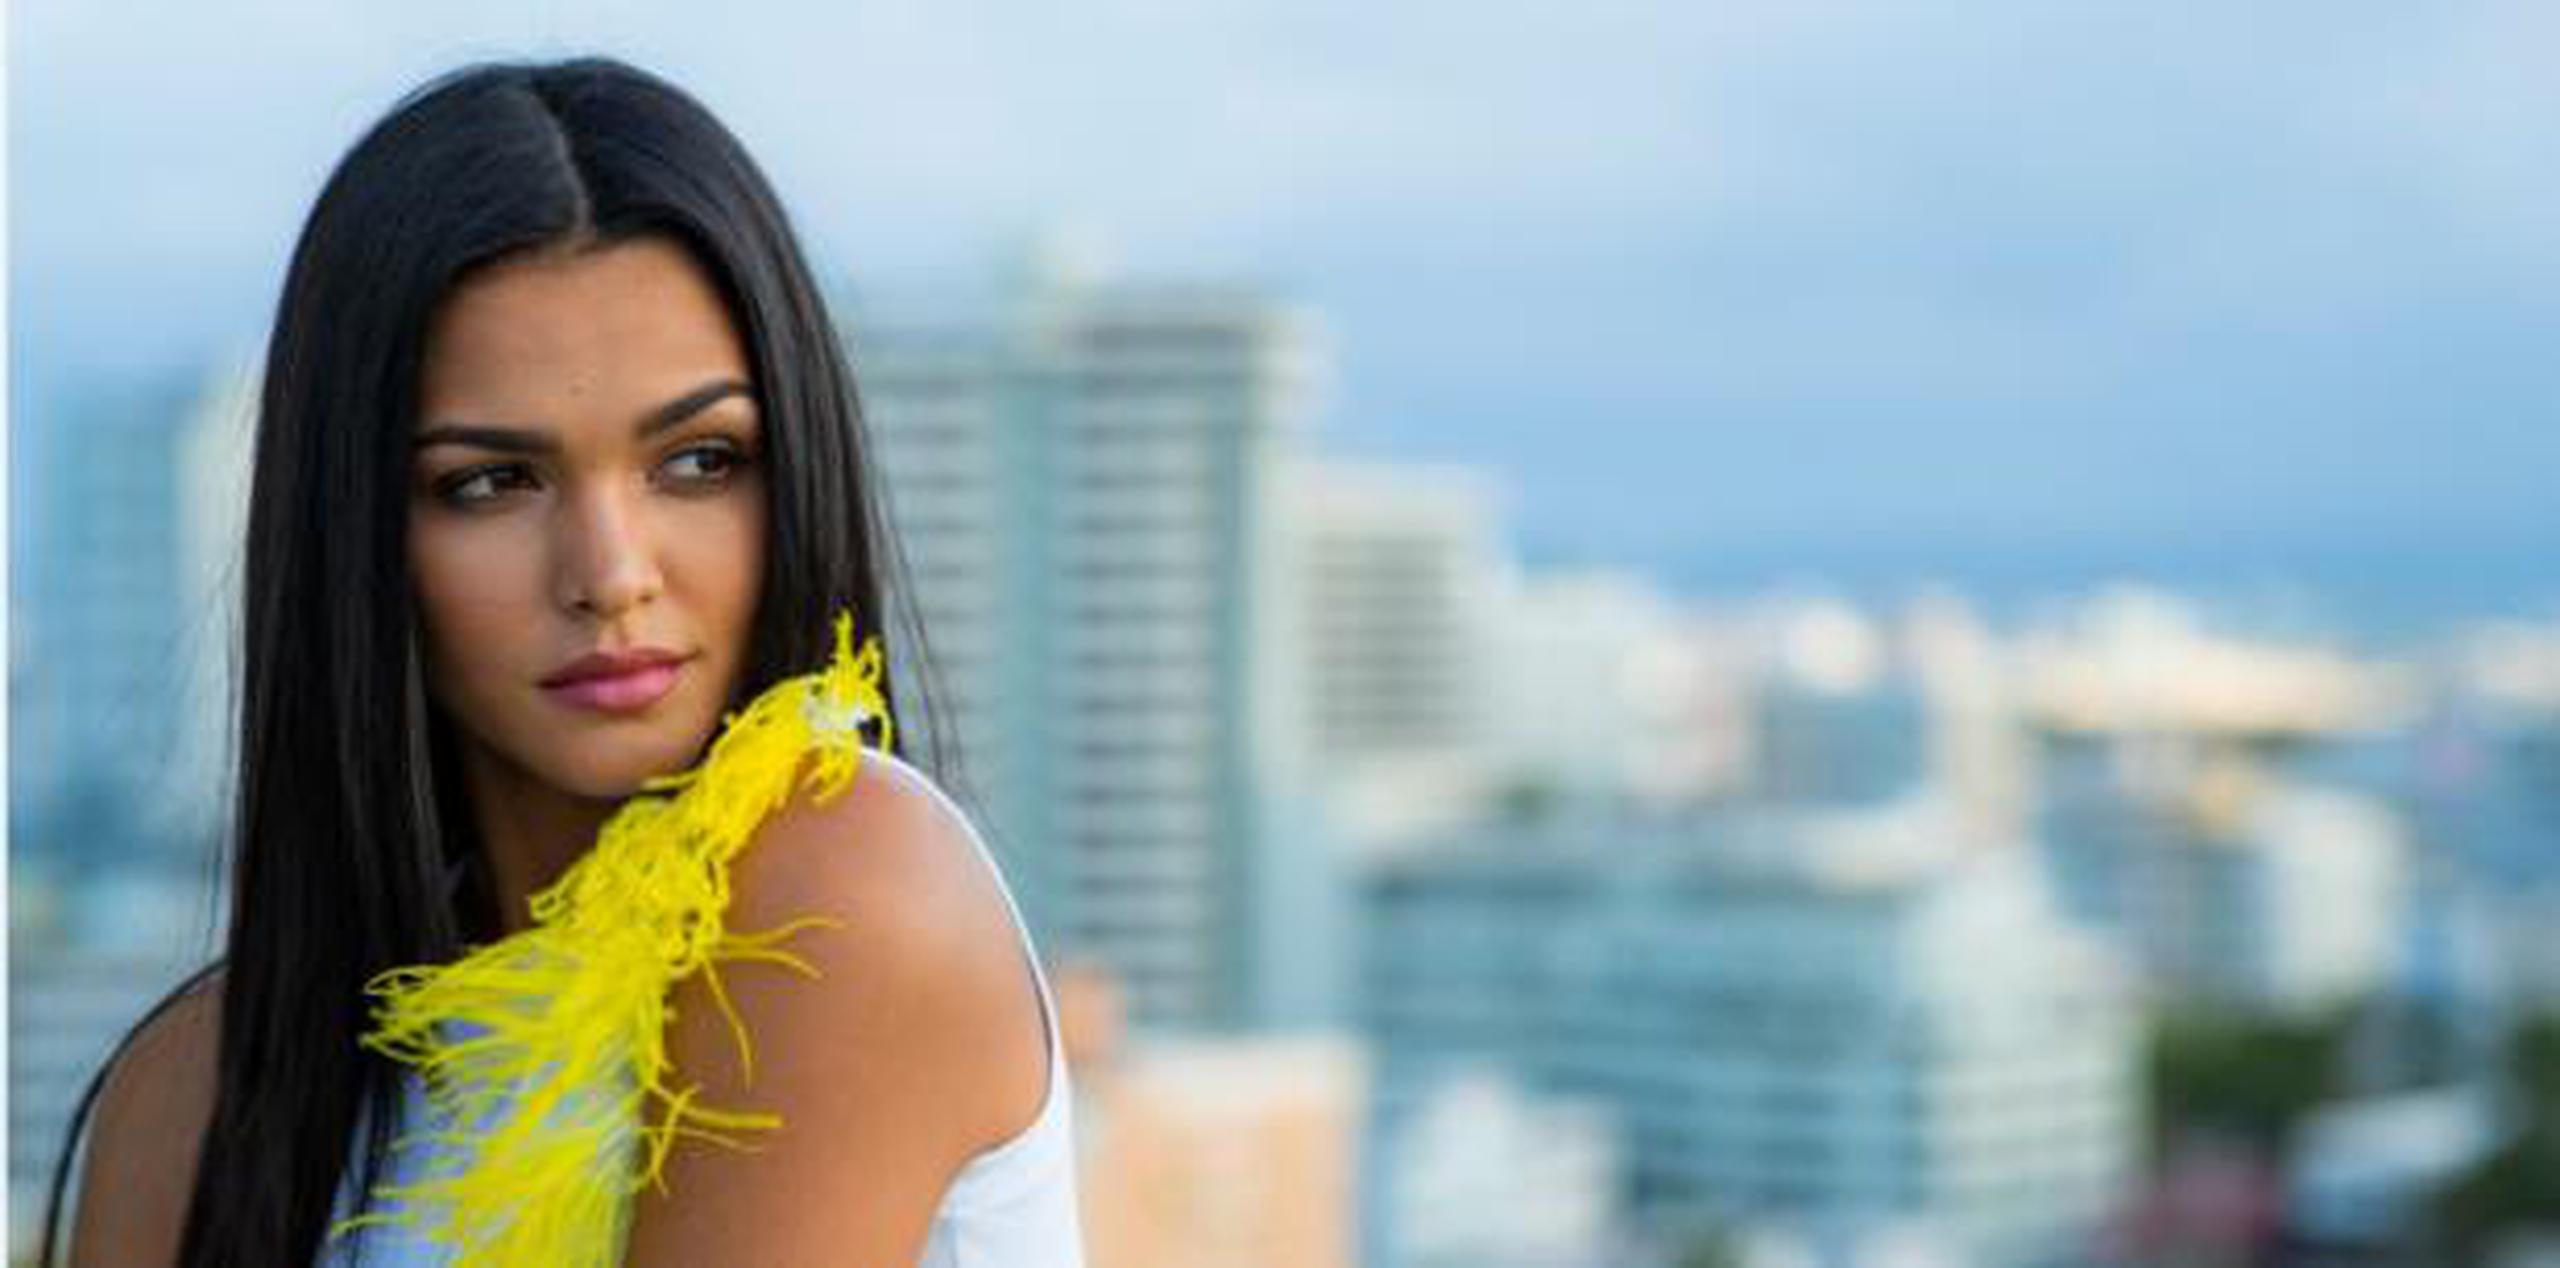 Miss Universe Puerto Rico 2018 reveló sentirse atraída por su voz y “muchas cositas”, según dijo entre risas, buscando evadir el tema. (tonito.zayas@gfrmedia.com)